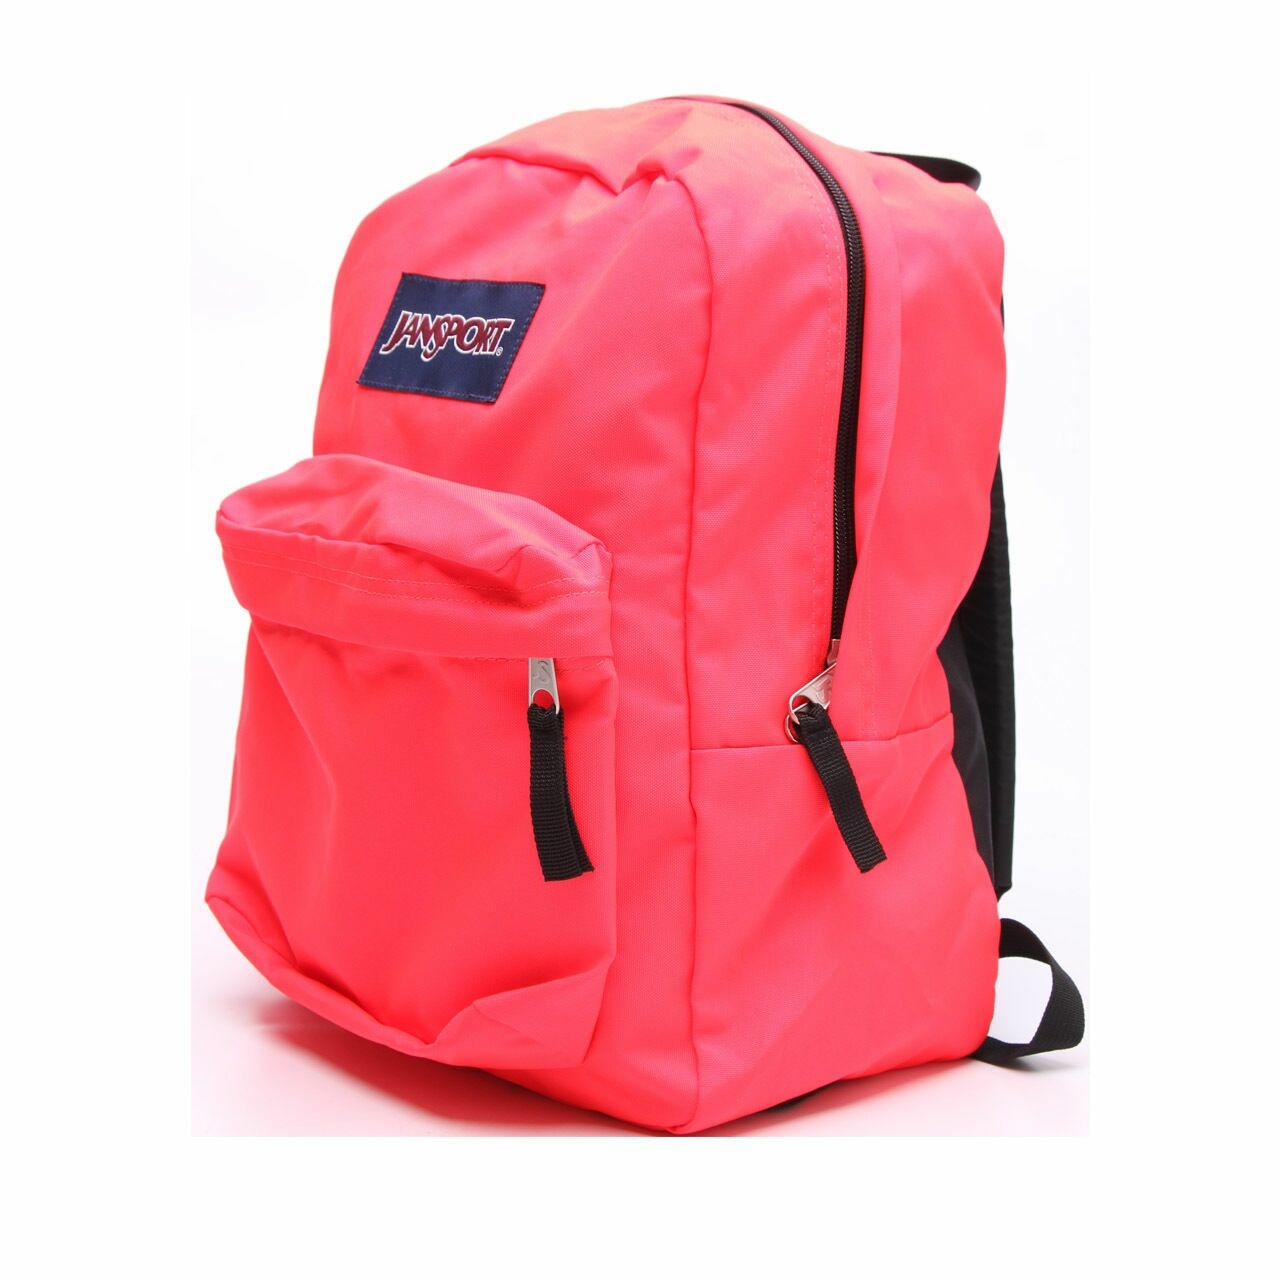 Jansport Pink Coral Backpack